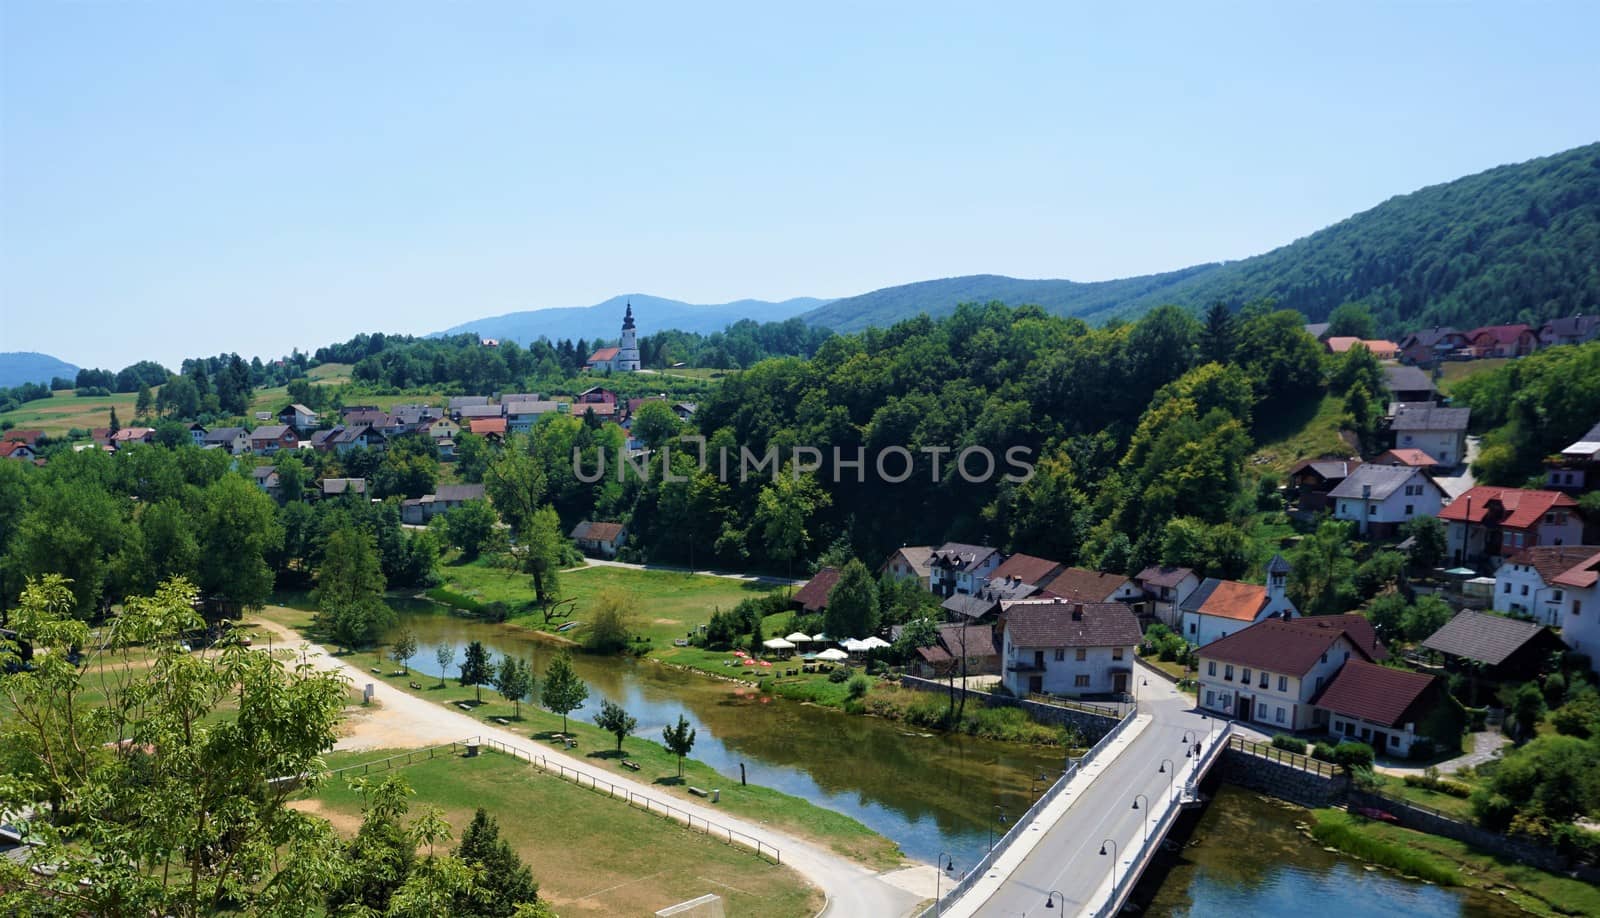 The town of Zuzemberk, Slovenia - a little gem in the Dinaric Alps